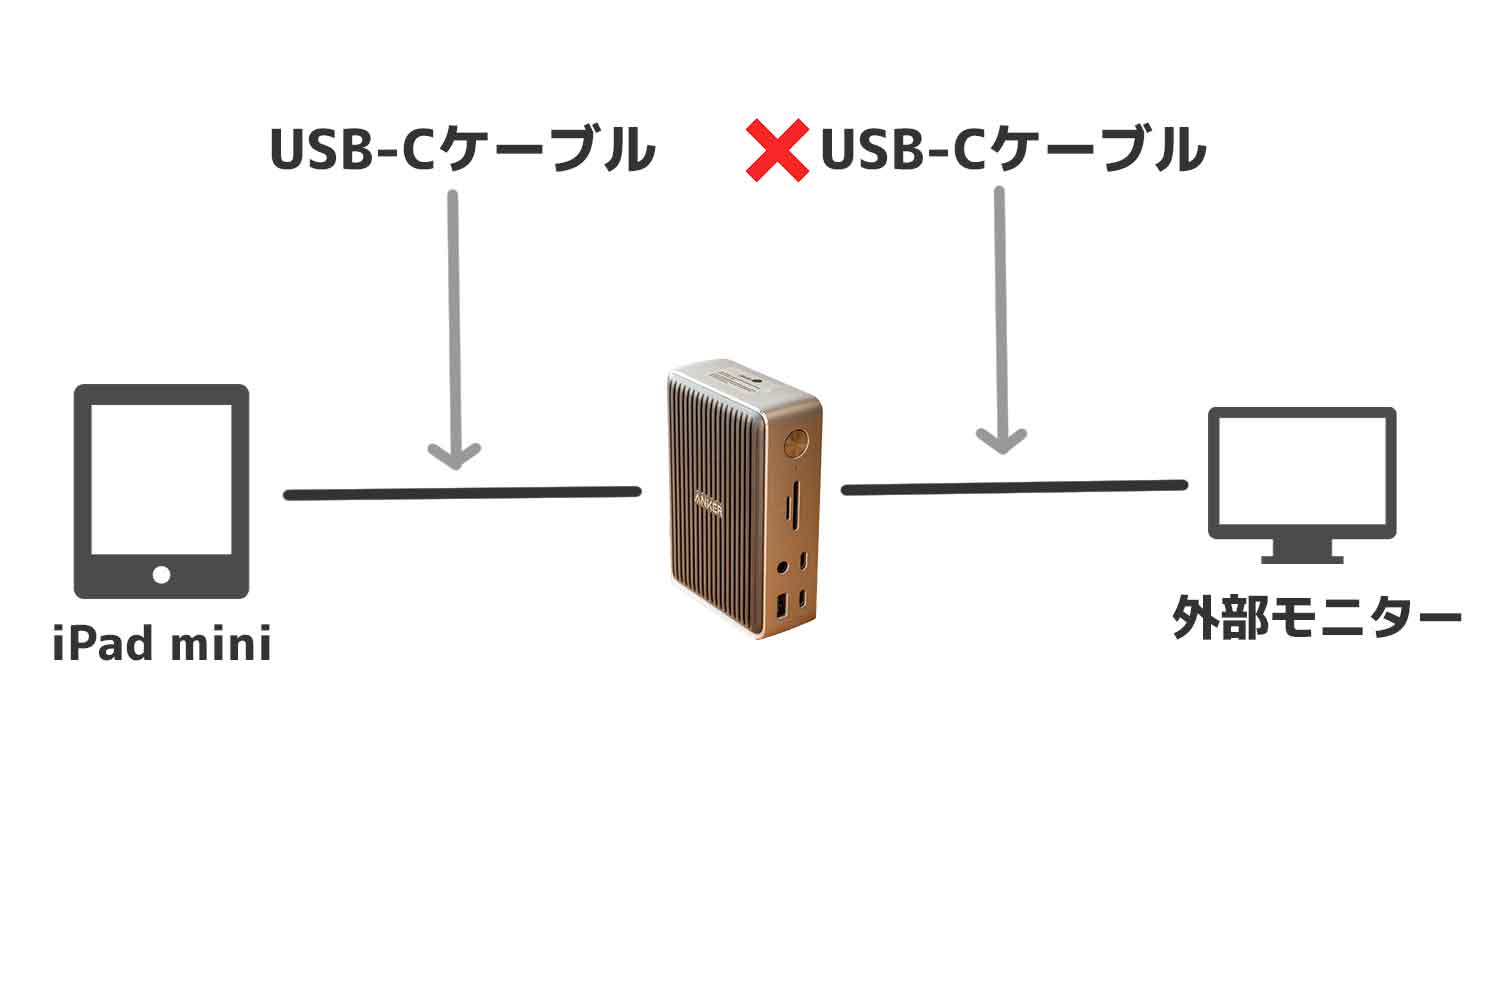 ドッキングステーションと外部モニターをUSB Type-Cケーブルで接続すると映像が出ない